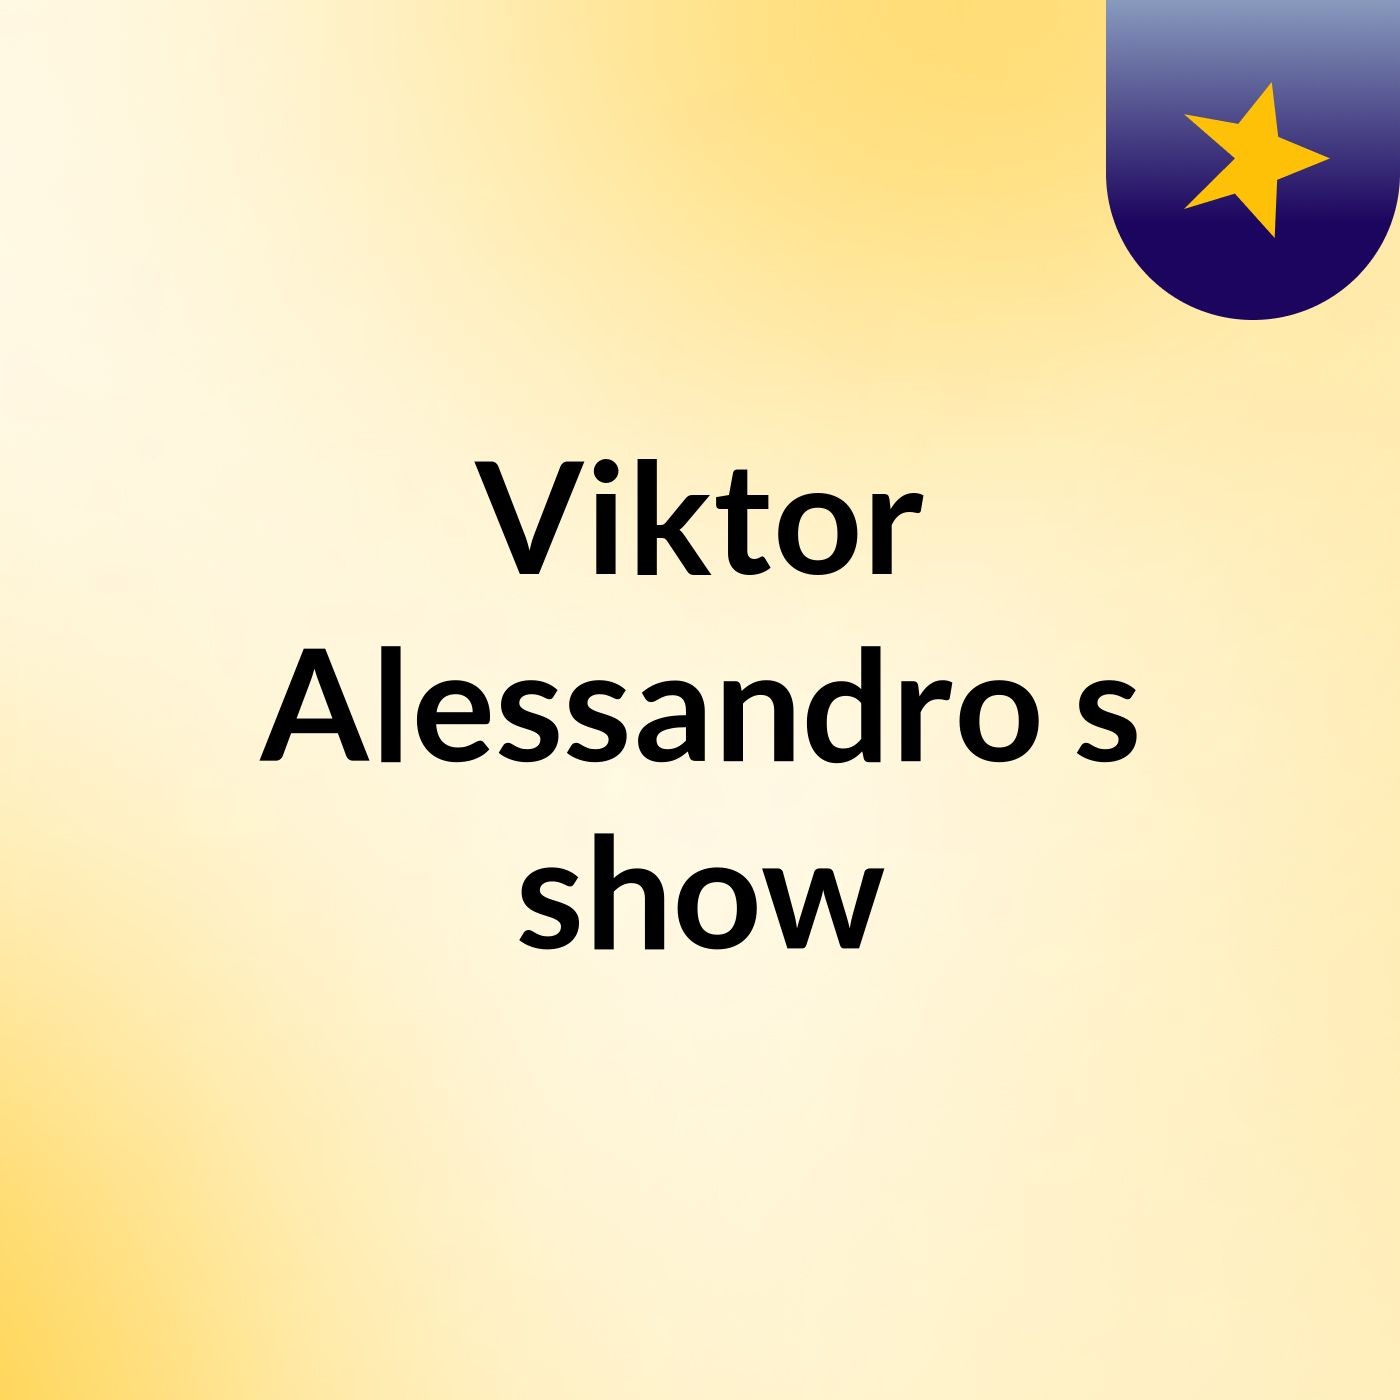 Viktor Alessandro's show